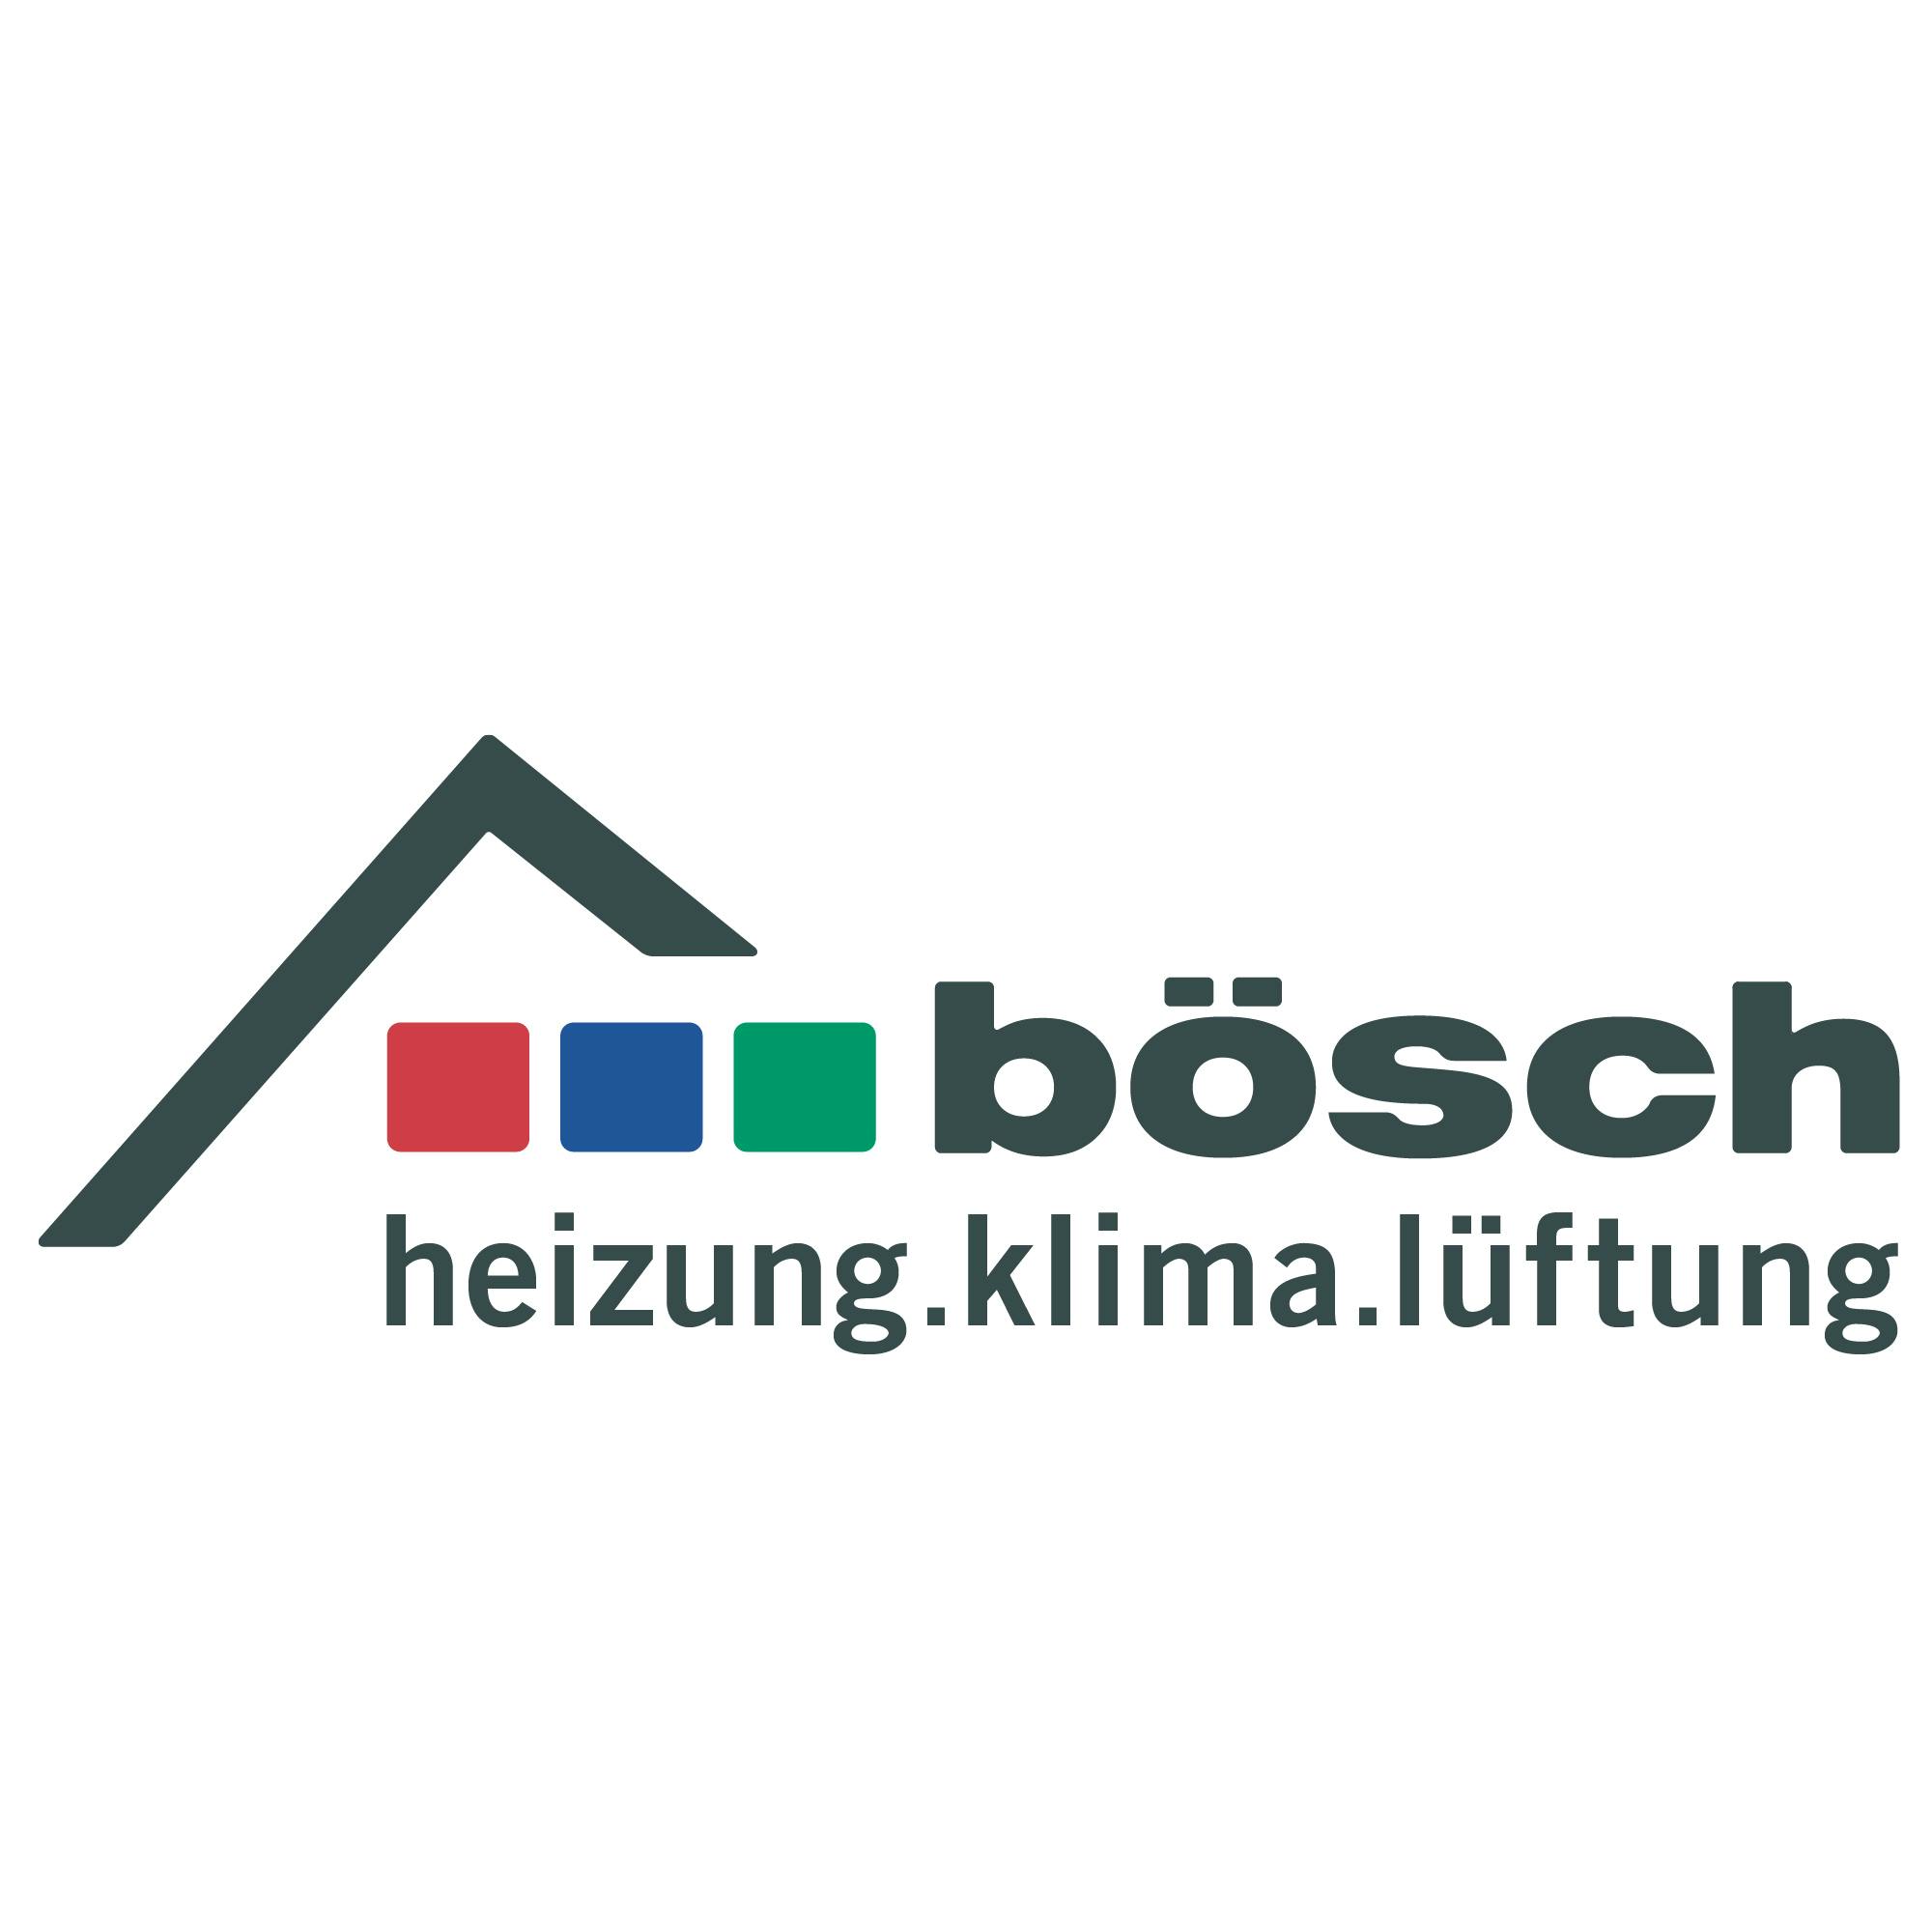 Heizung, Klima, Lüftung mit 24/7 Kundendienst | bösch.at